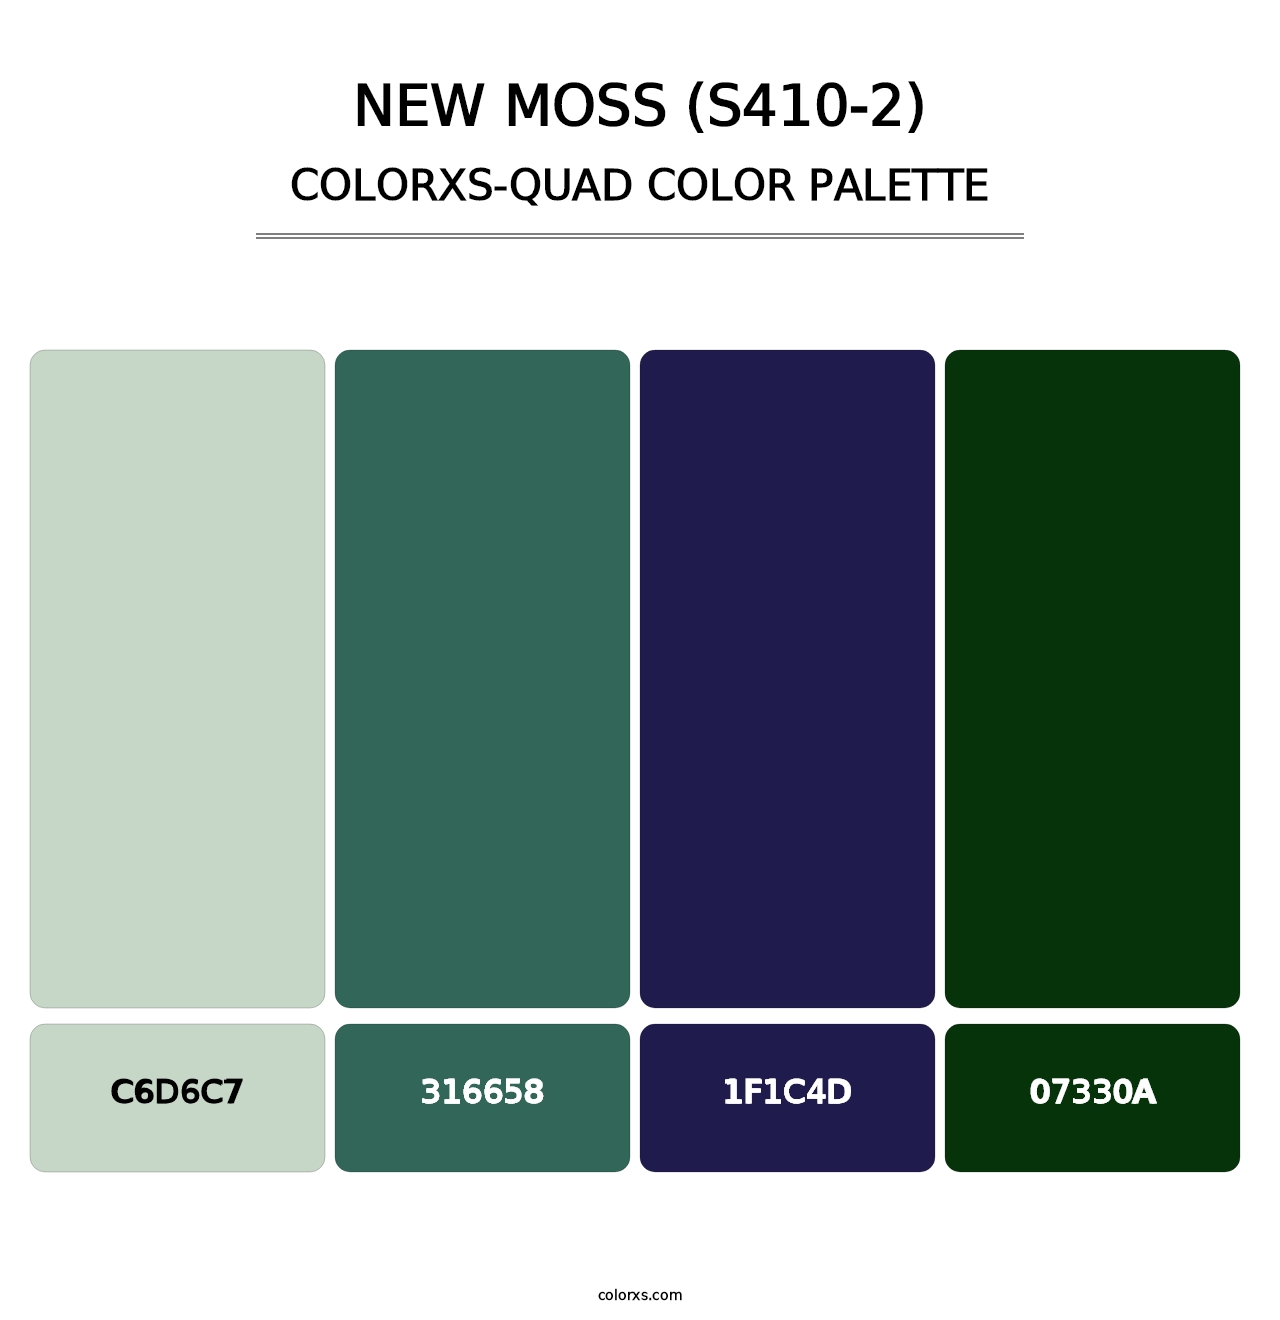 New Moss (S410-2) - Colorxs Quad Palette